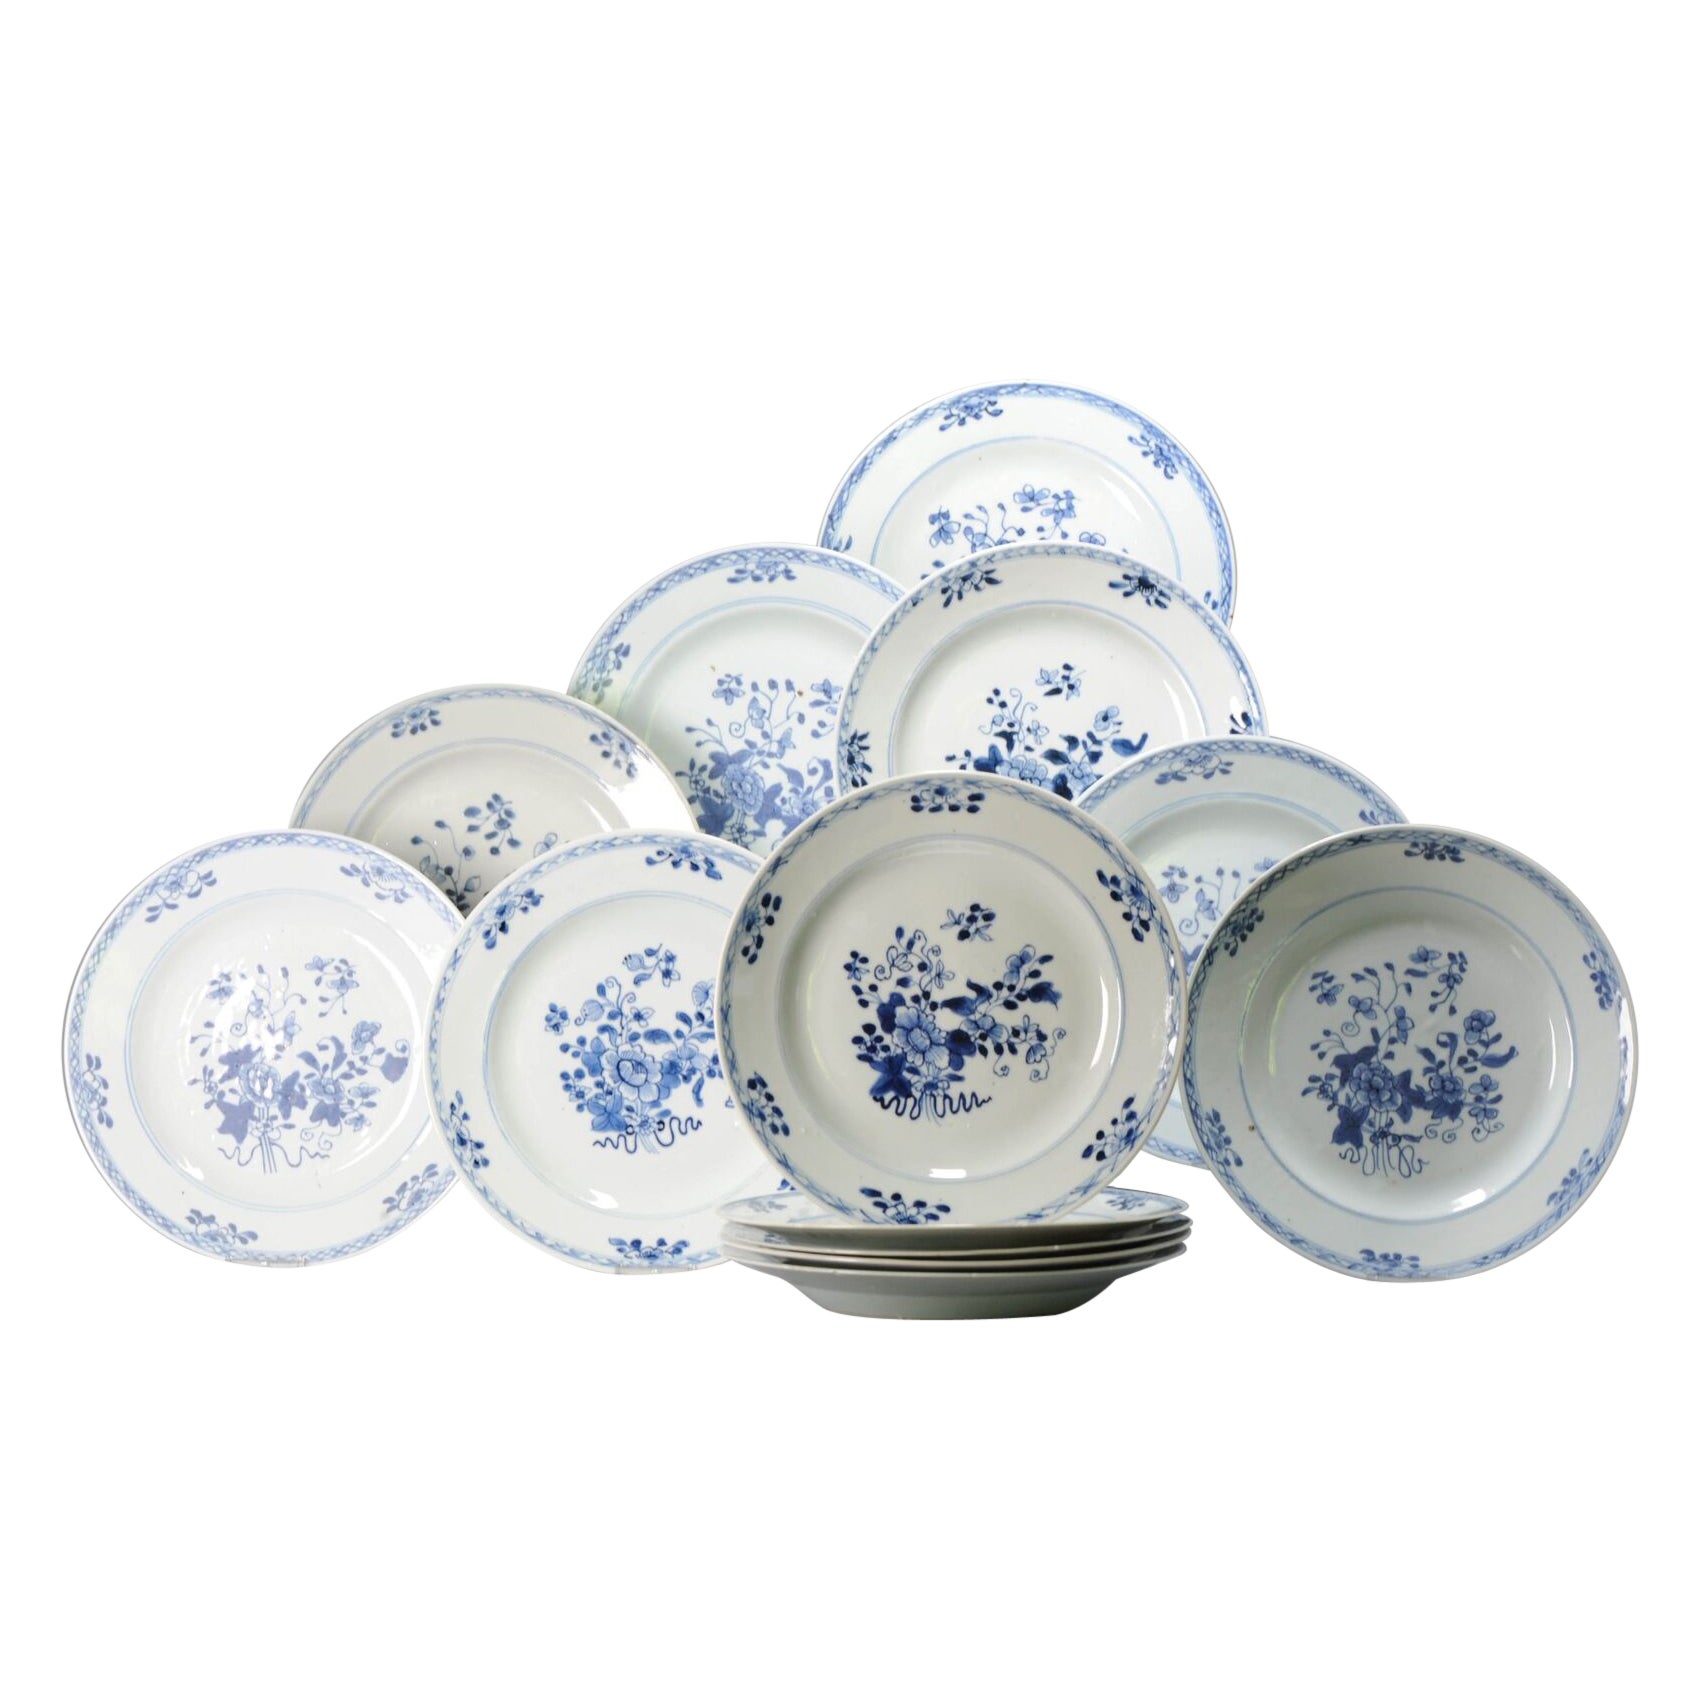 Ensemble de 13 assiettes plates anciennes en porcelaine chinoise bleue et blanche de la période Qing